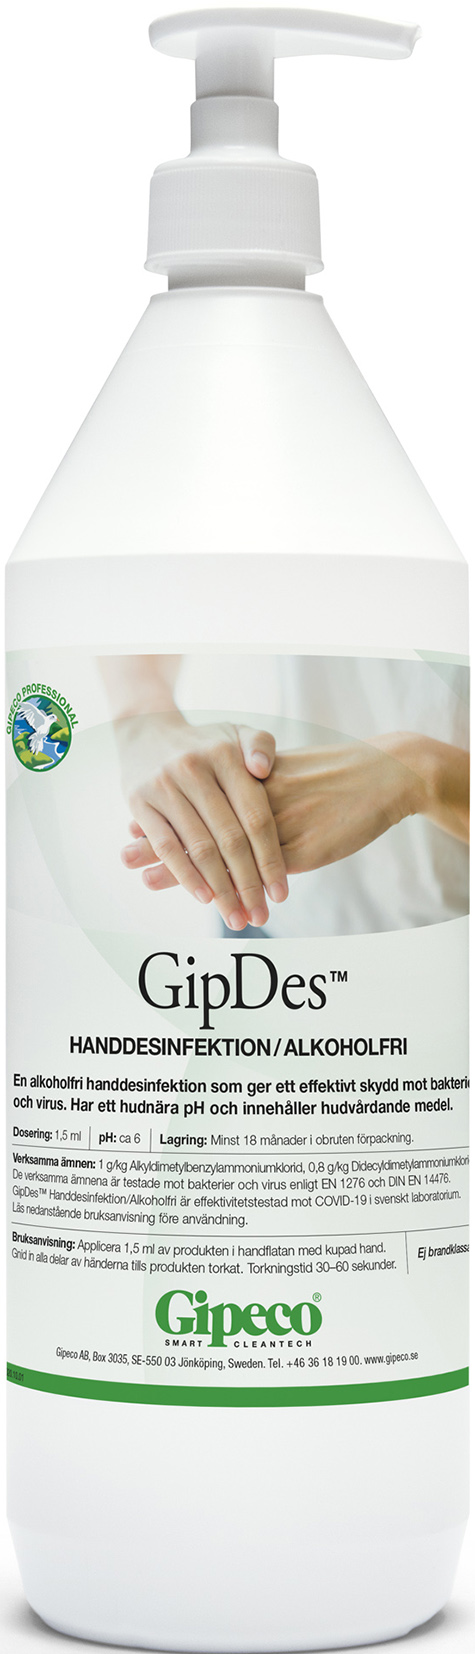 [8556604] GipDes Handdesinfektion 1l